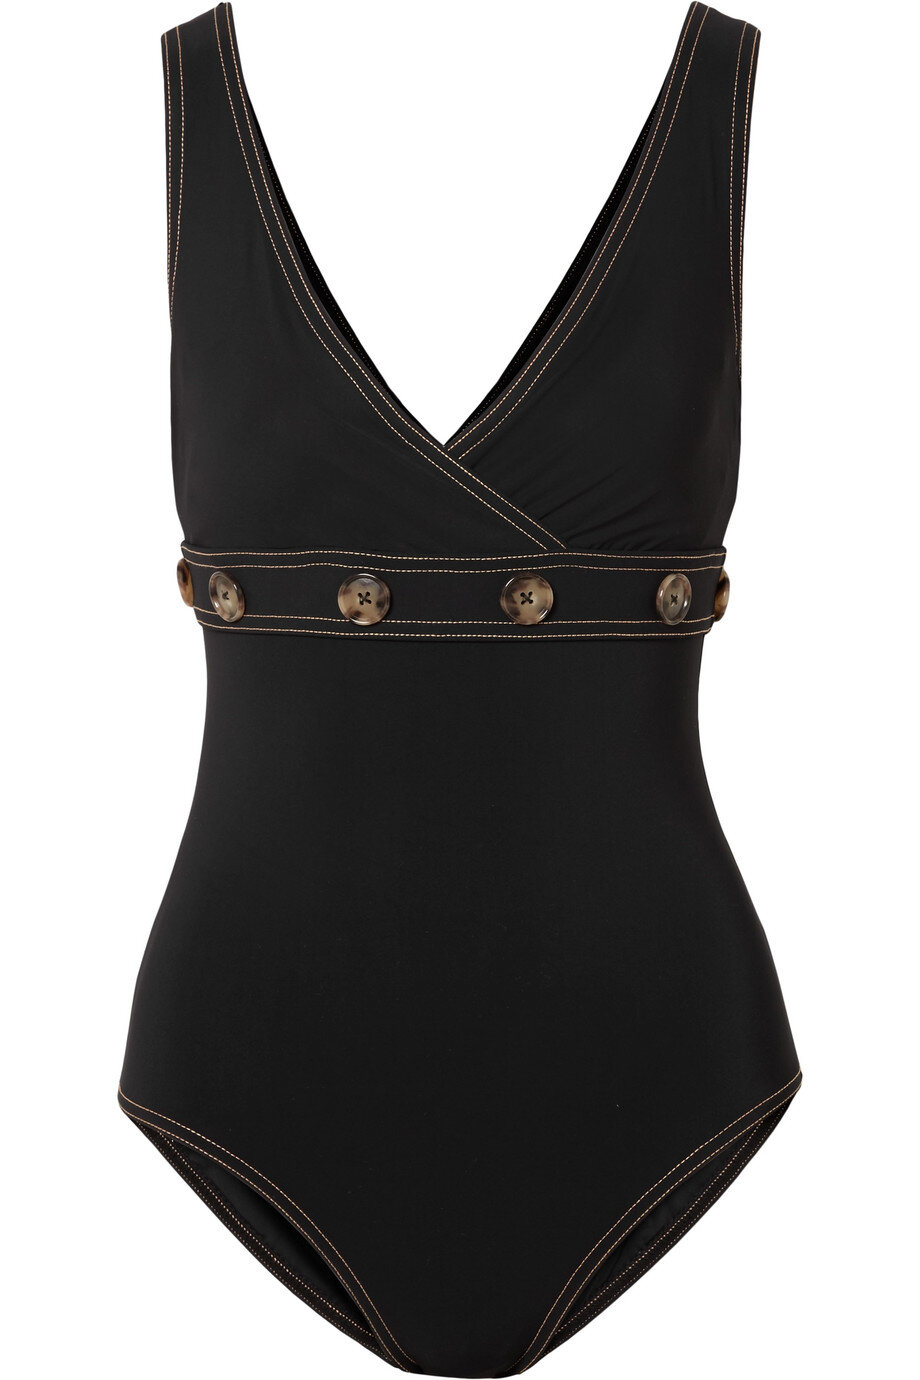 Karla Colletto Lauren Swimsuit in Black.jpg